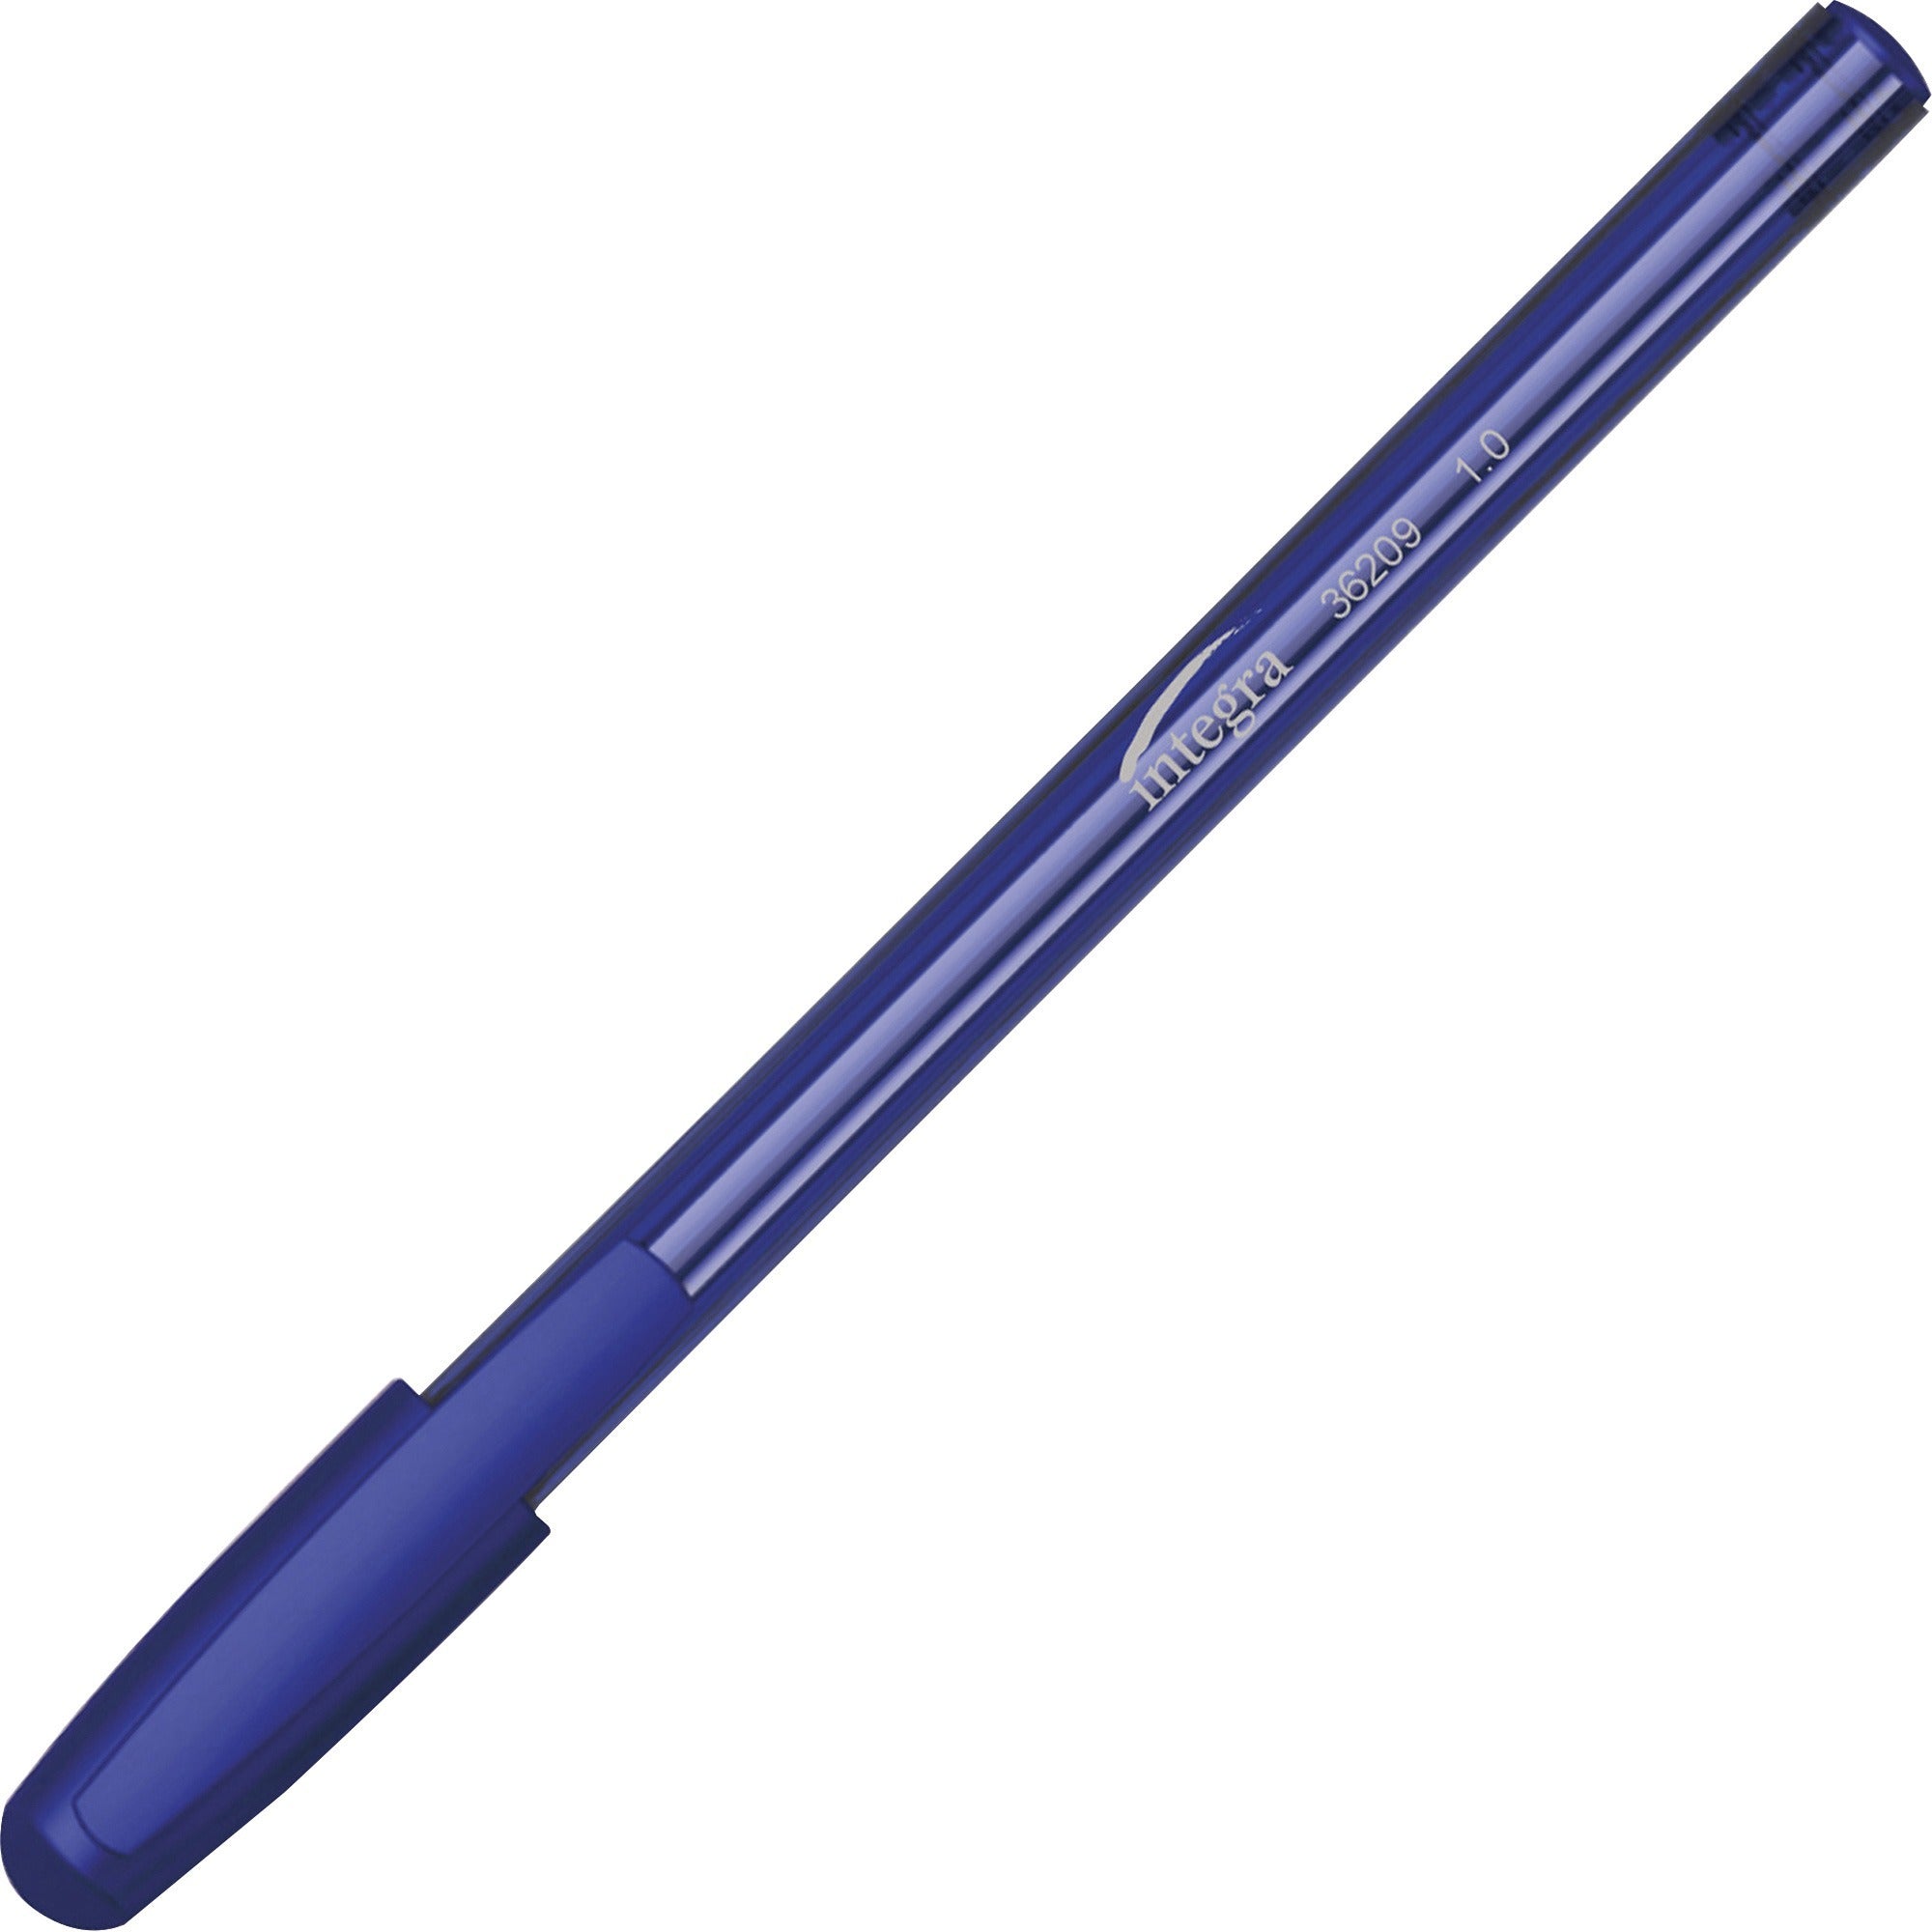 integra-10-mm-tip-ink-pen-medium-pen-point-1-mm-pen-point-size-blue-liquid-ink-blue-barrel-60-pack_ita36209 - 1